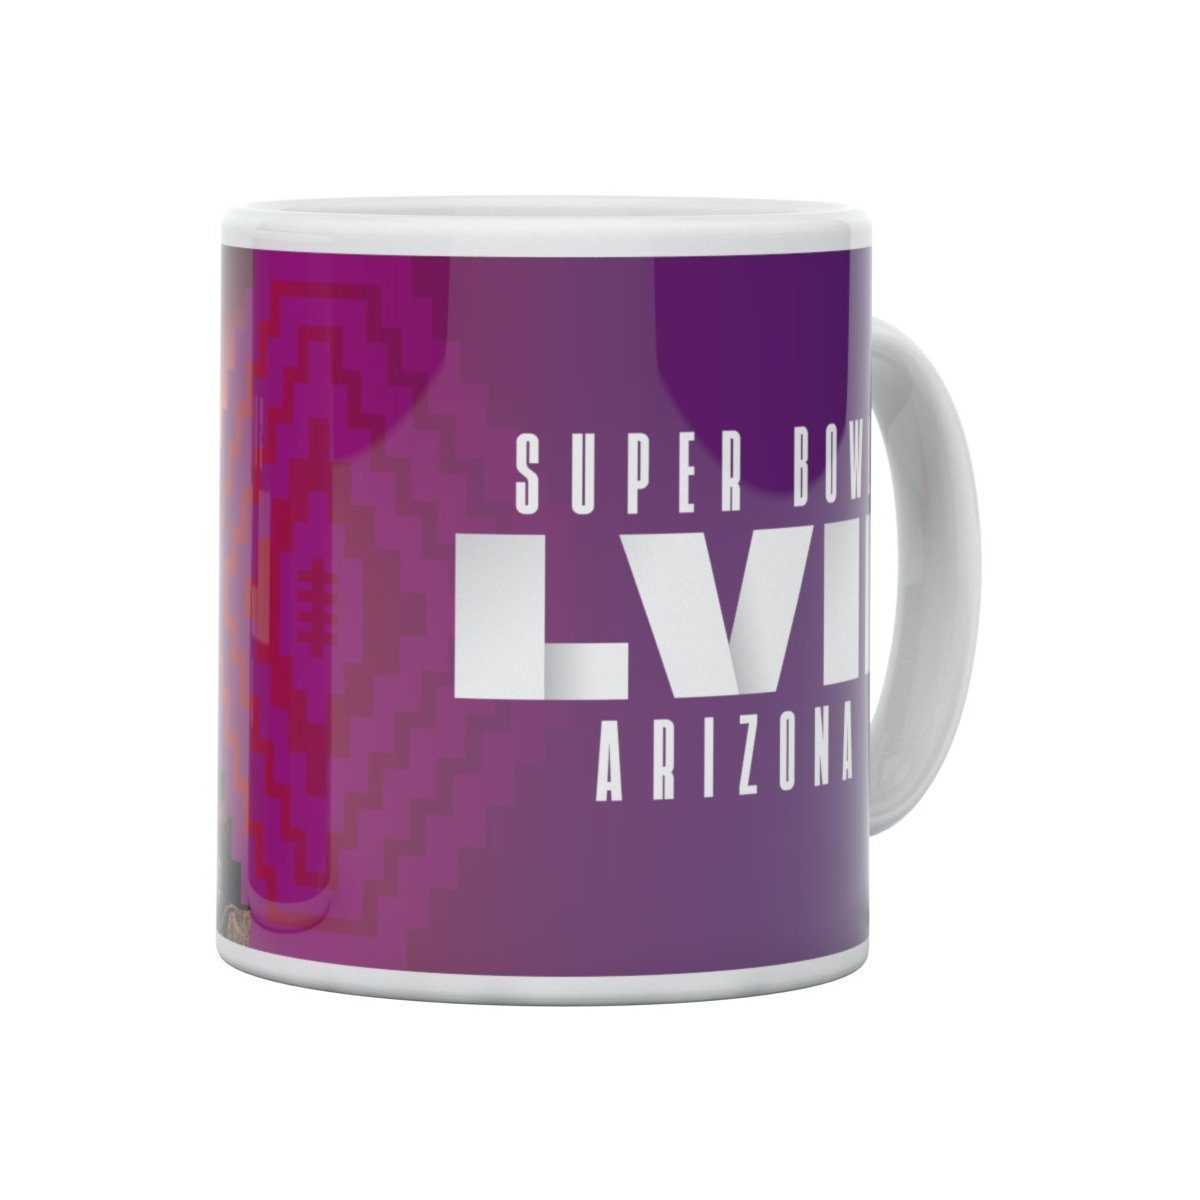 Great Branding Tasse Tasse Superbowl Arizona LVII NFL 330ml